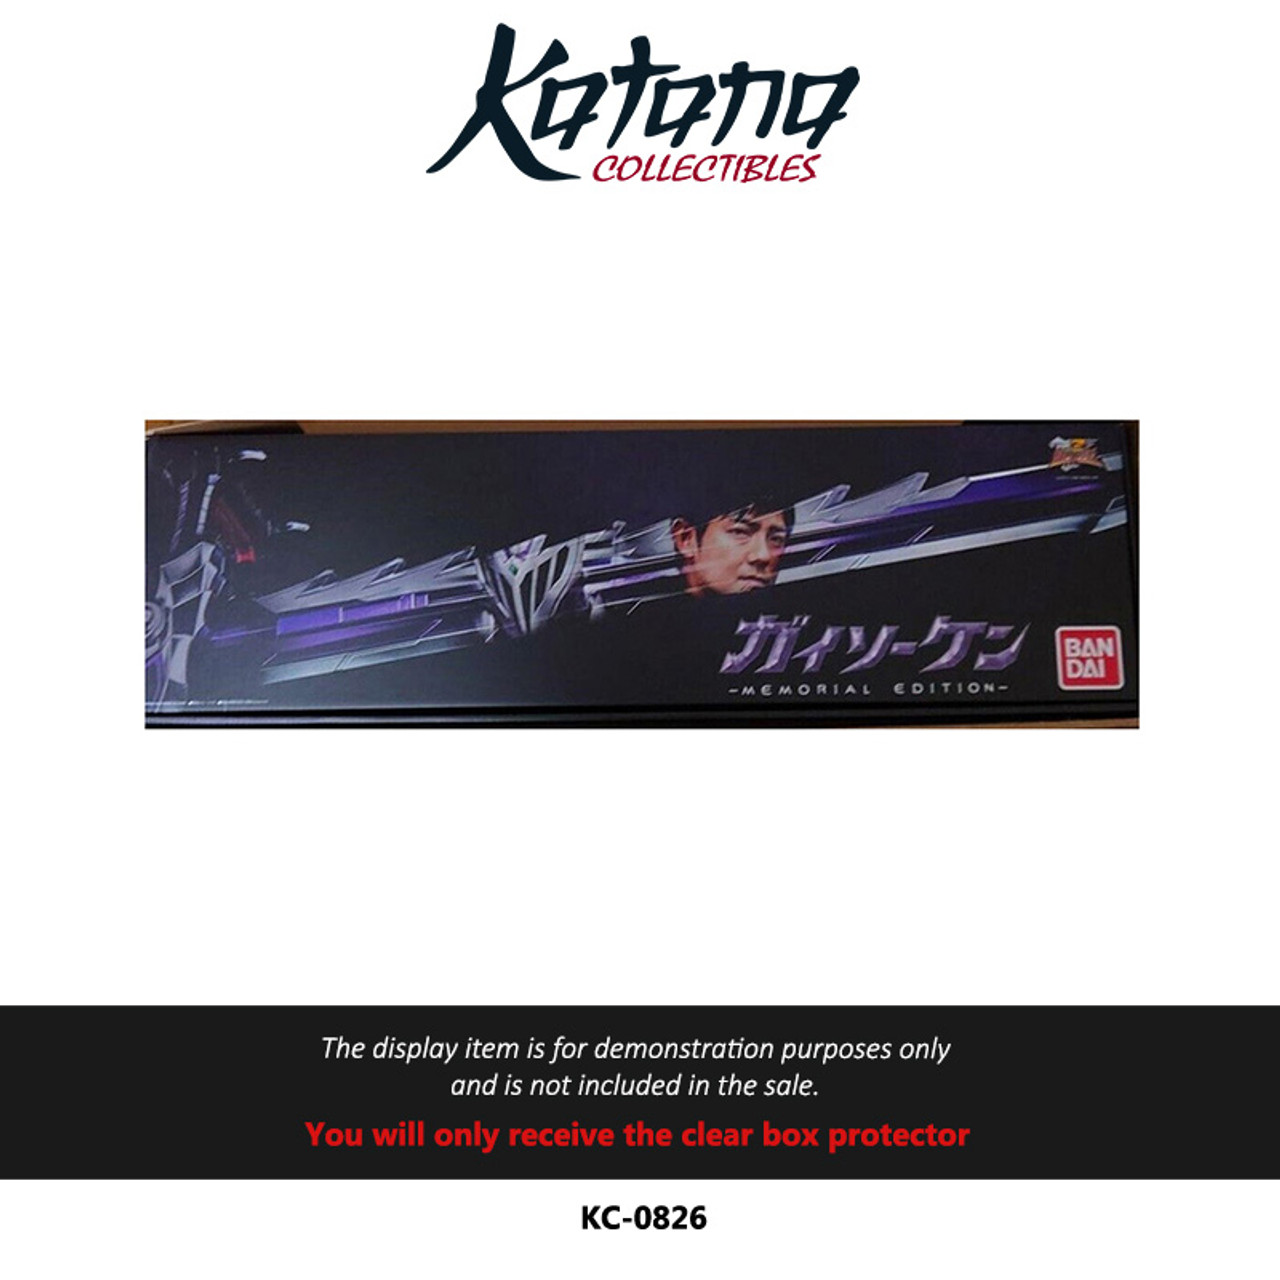 Katana Collectibles Protector For Memorial Edition Guysoken Sword